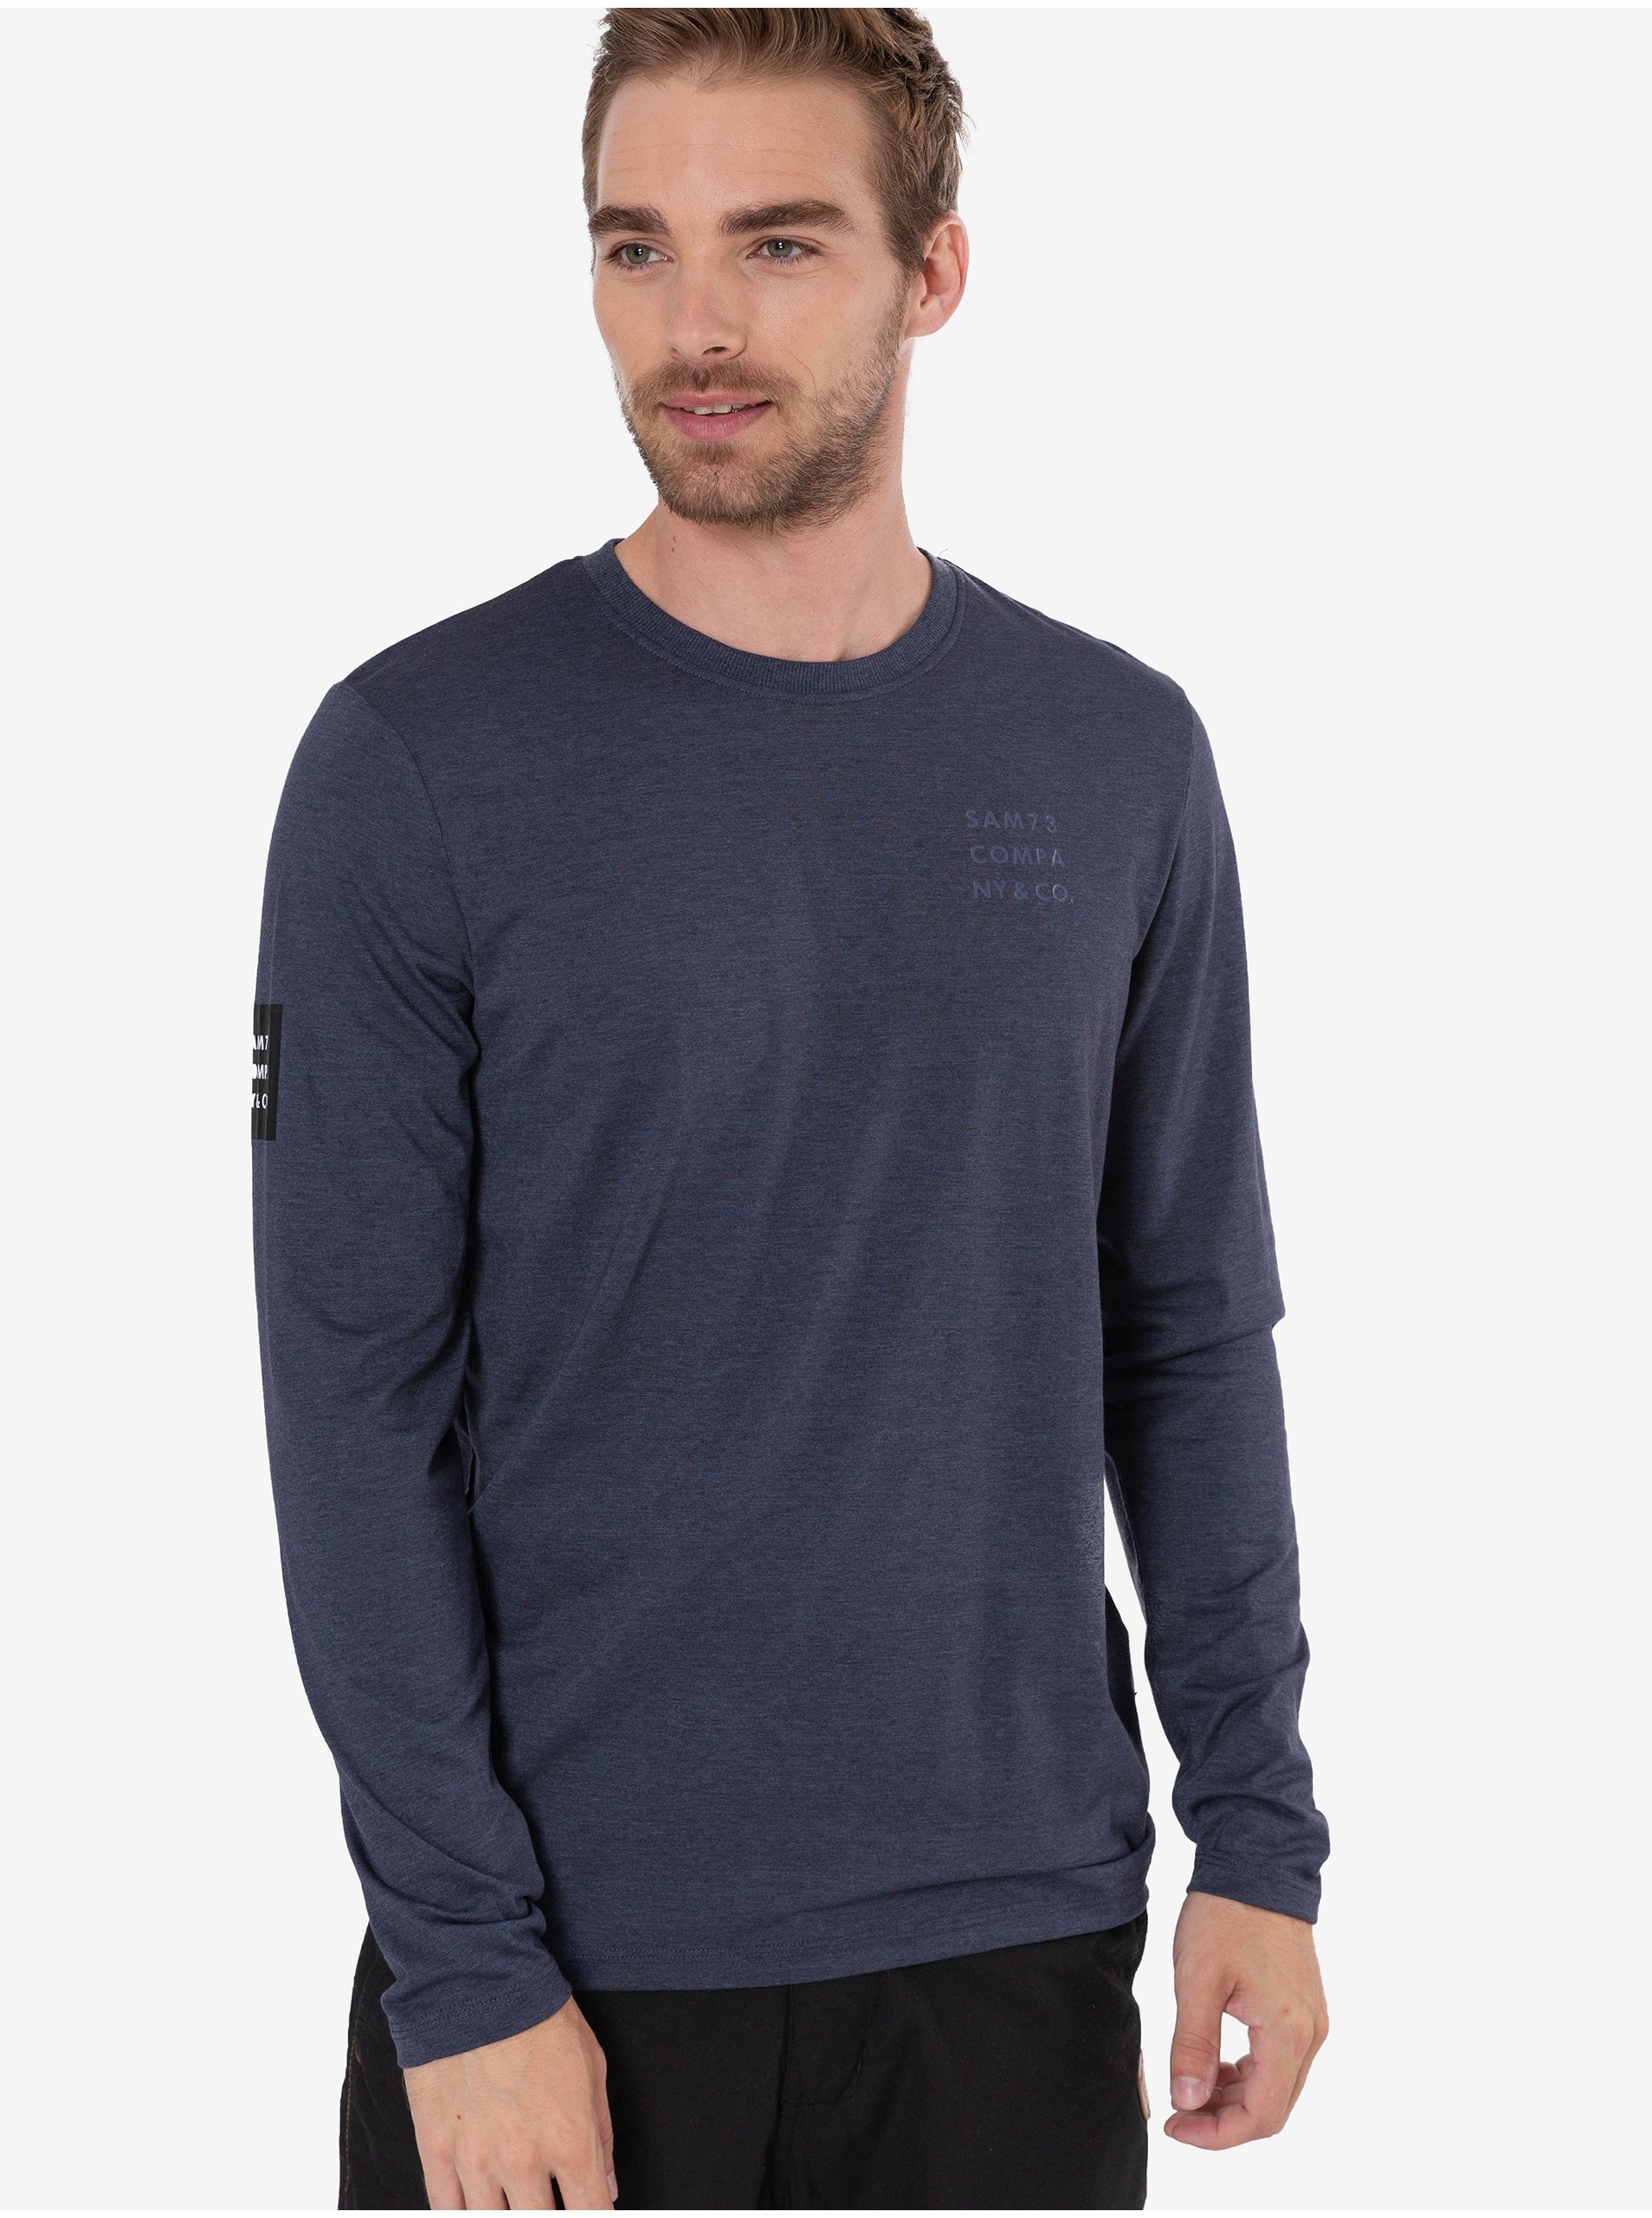 E-shop Tmavě modré pánské žíhané tričko Sam 73